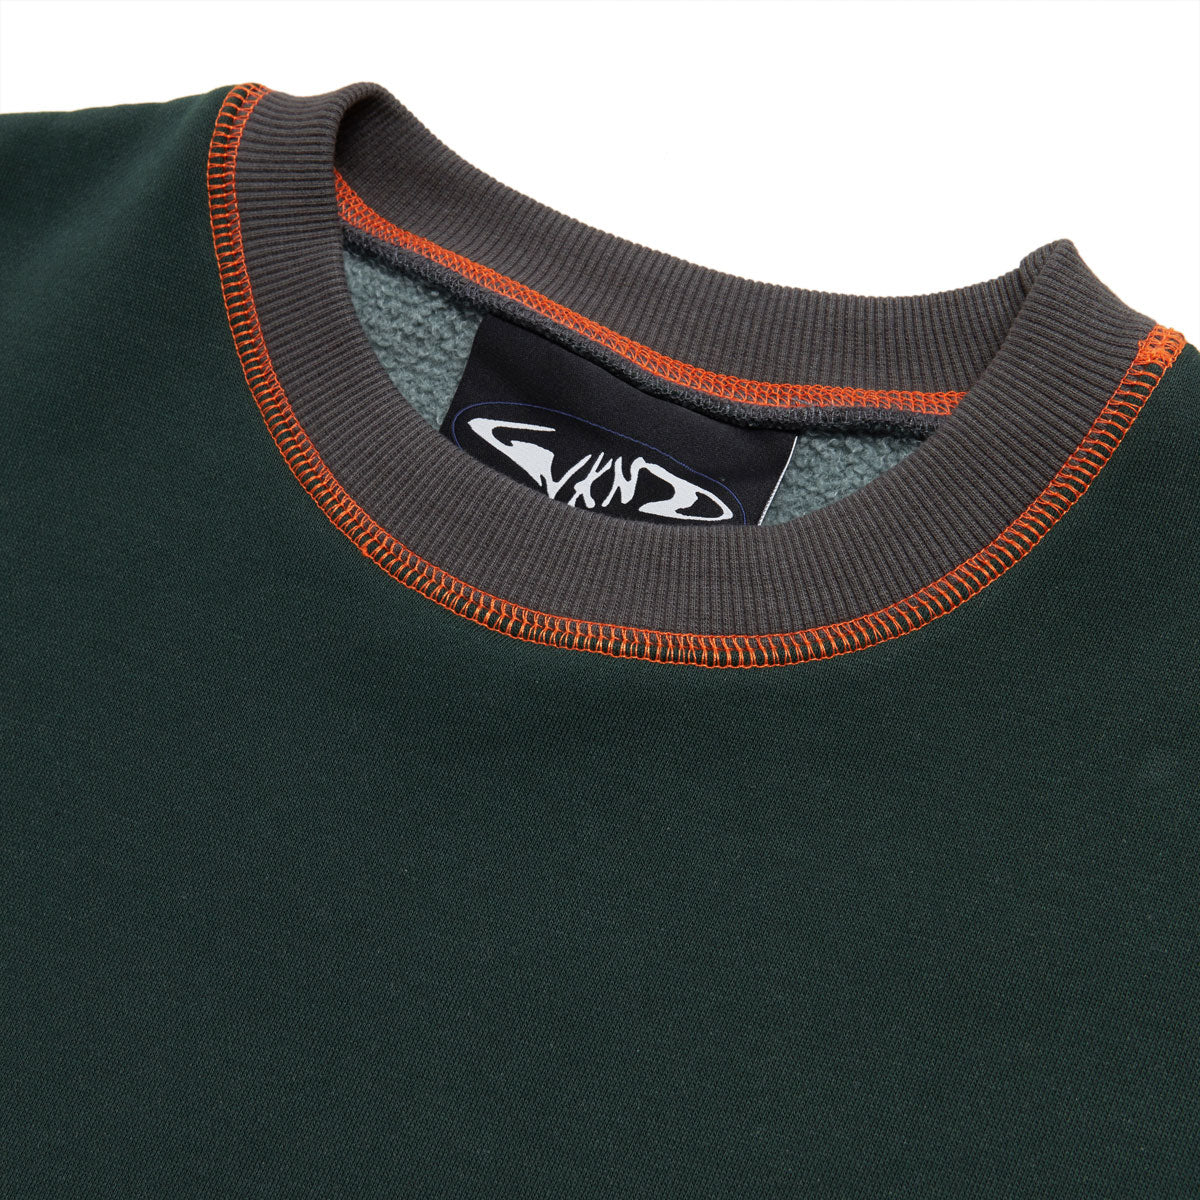 WKND Pigment Jumper Sweatshirt - Green image 3